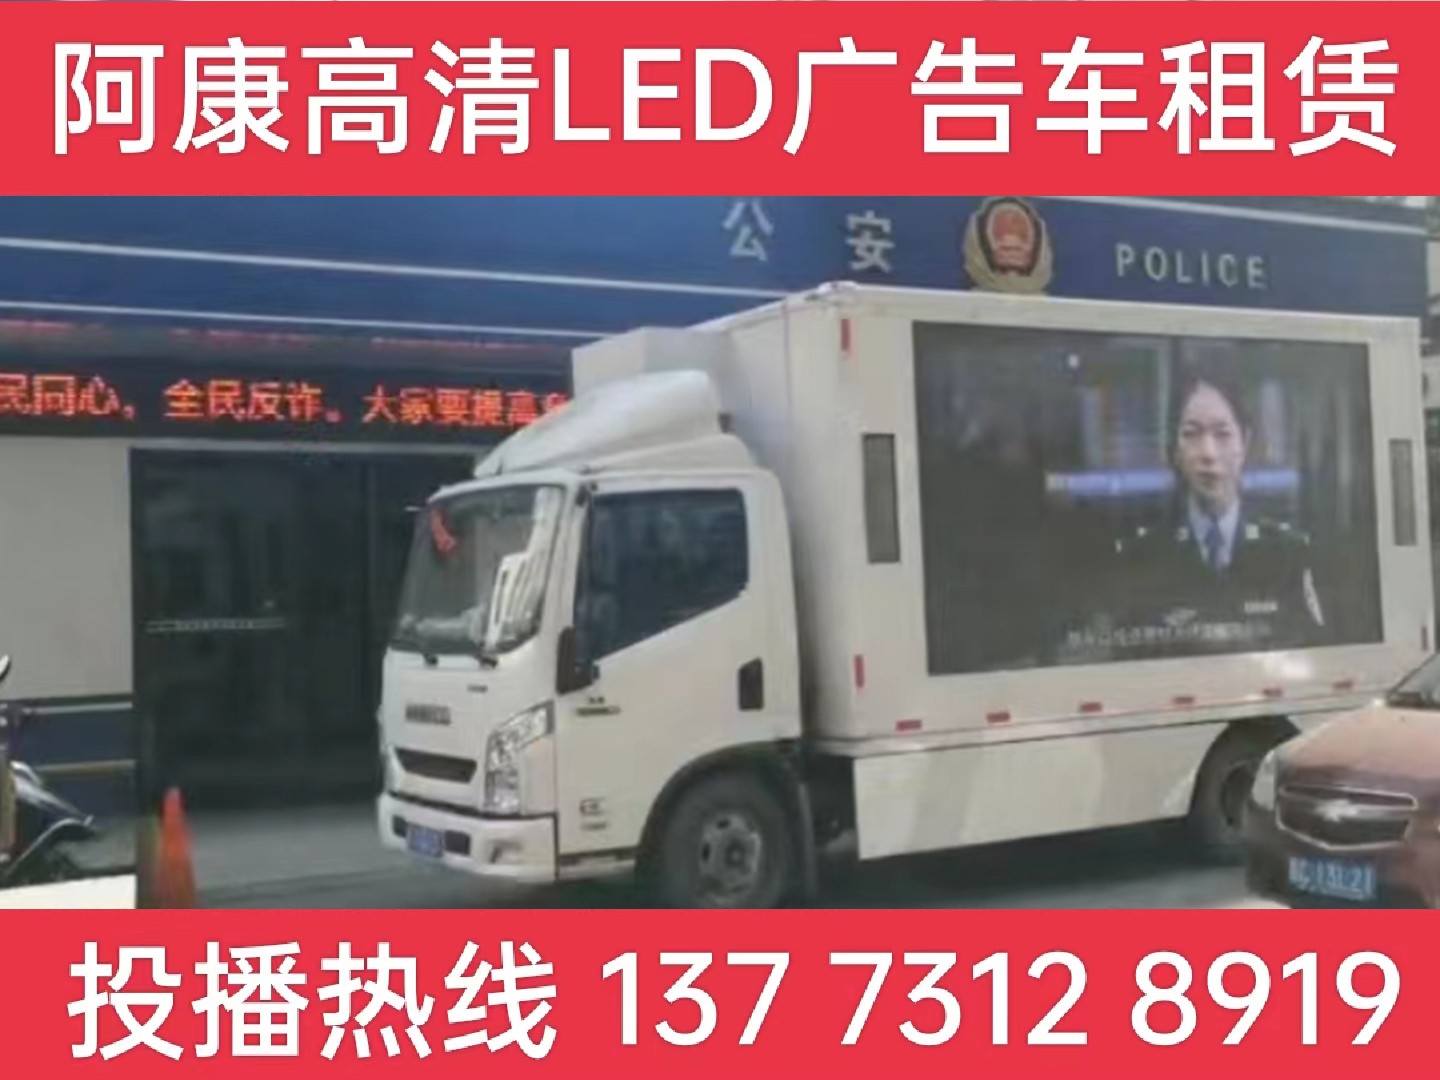 苏州LED广告车租赁-反诈宣传